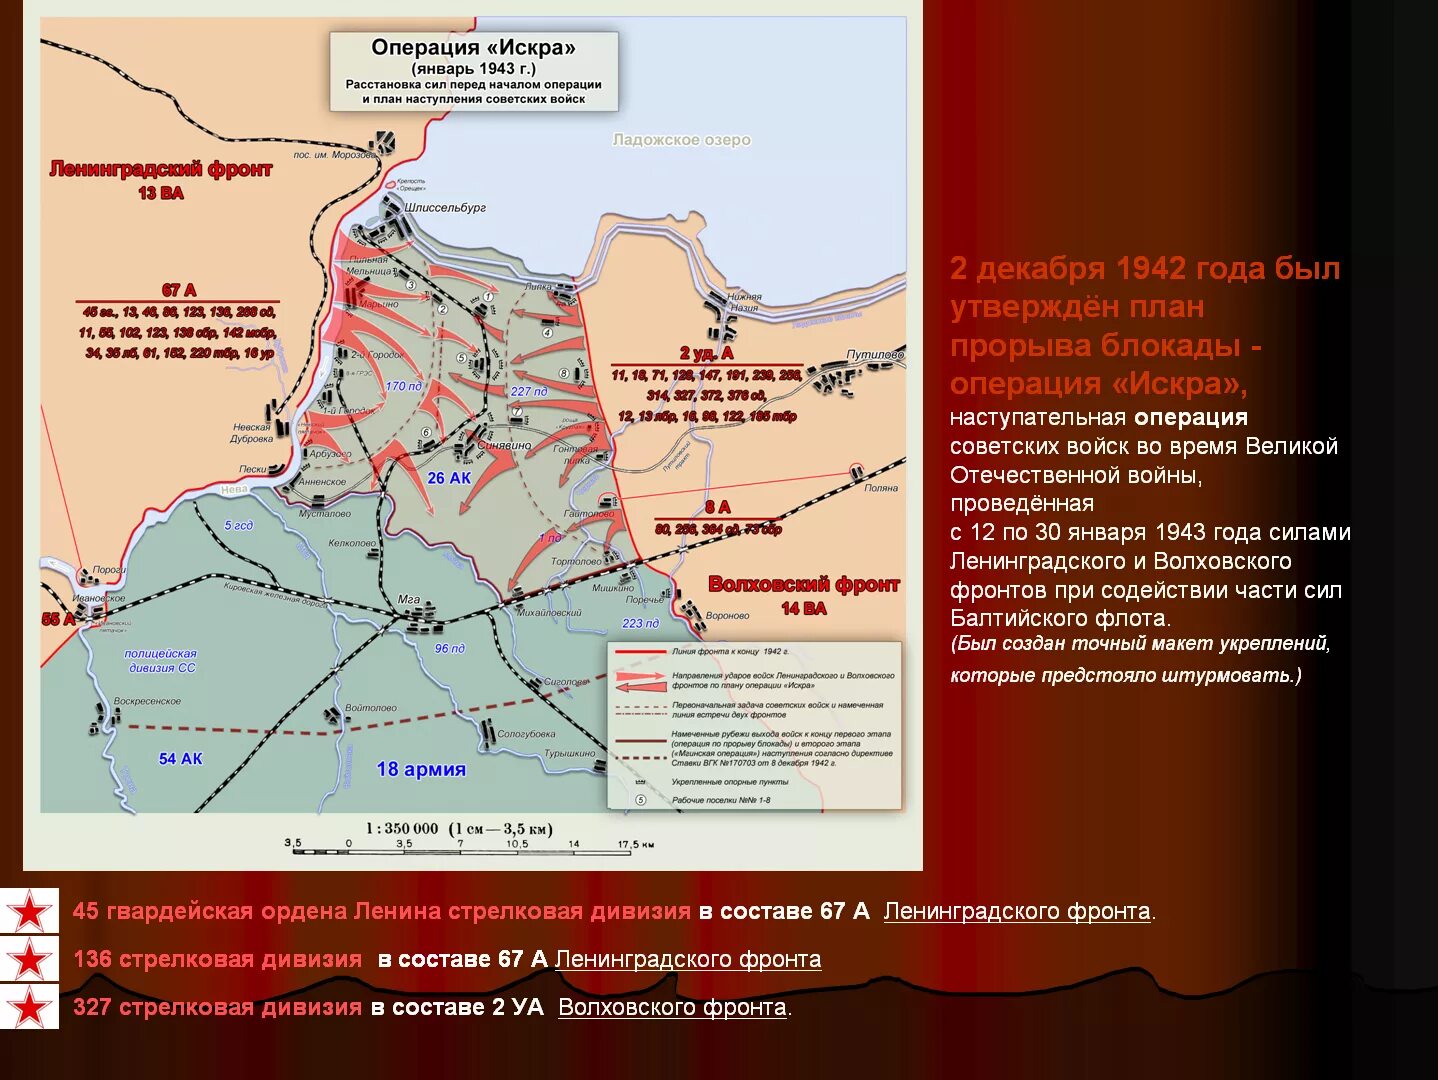 Прорыв блокады Ленинграда (12–30 января 1943). Карта прорыва блокады Ленинграда в 1943 году.